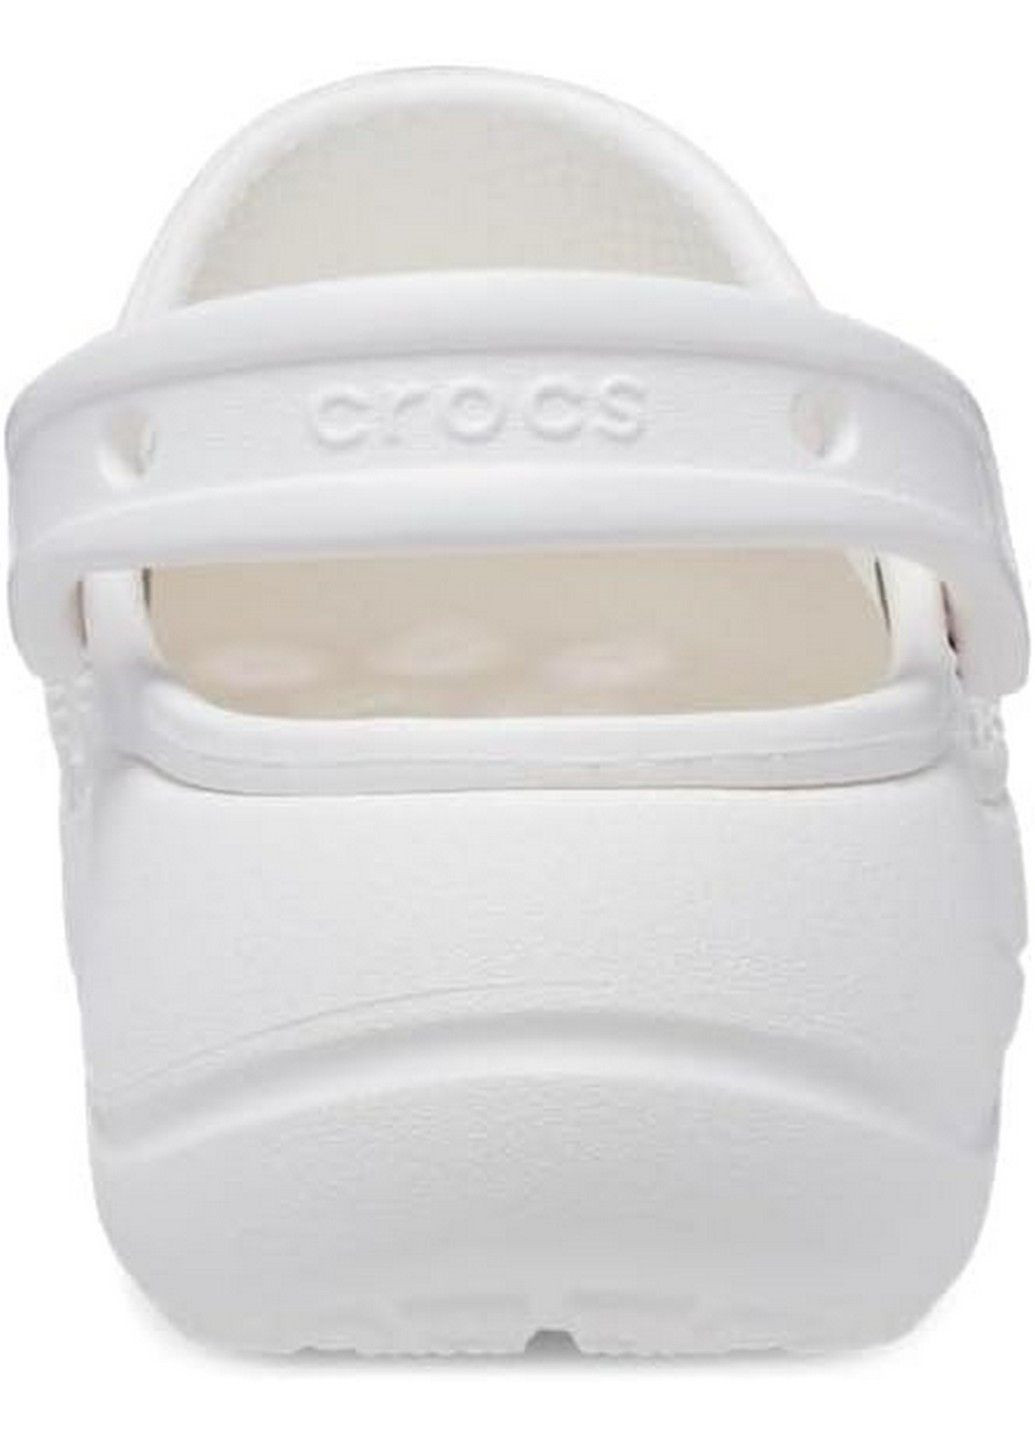 Белые сабо кроксы Crocs на платформе